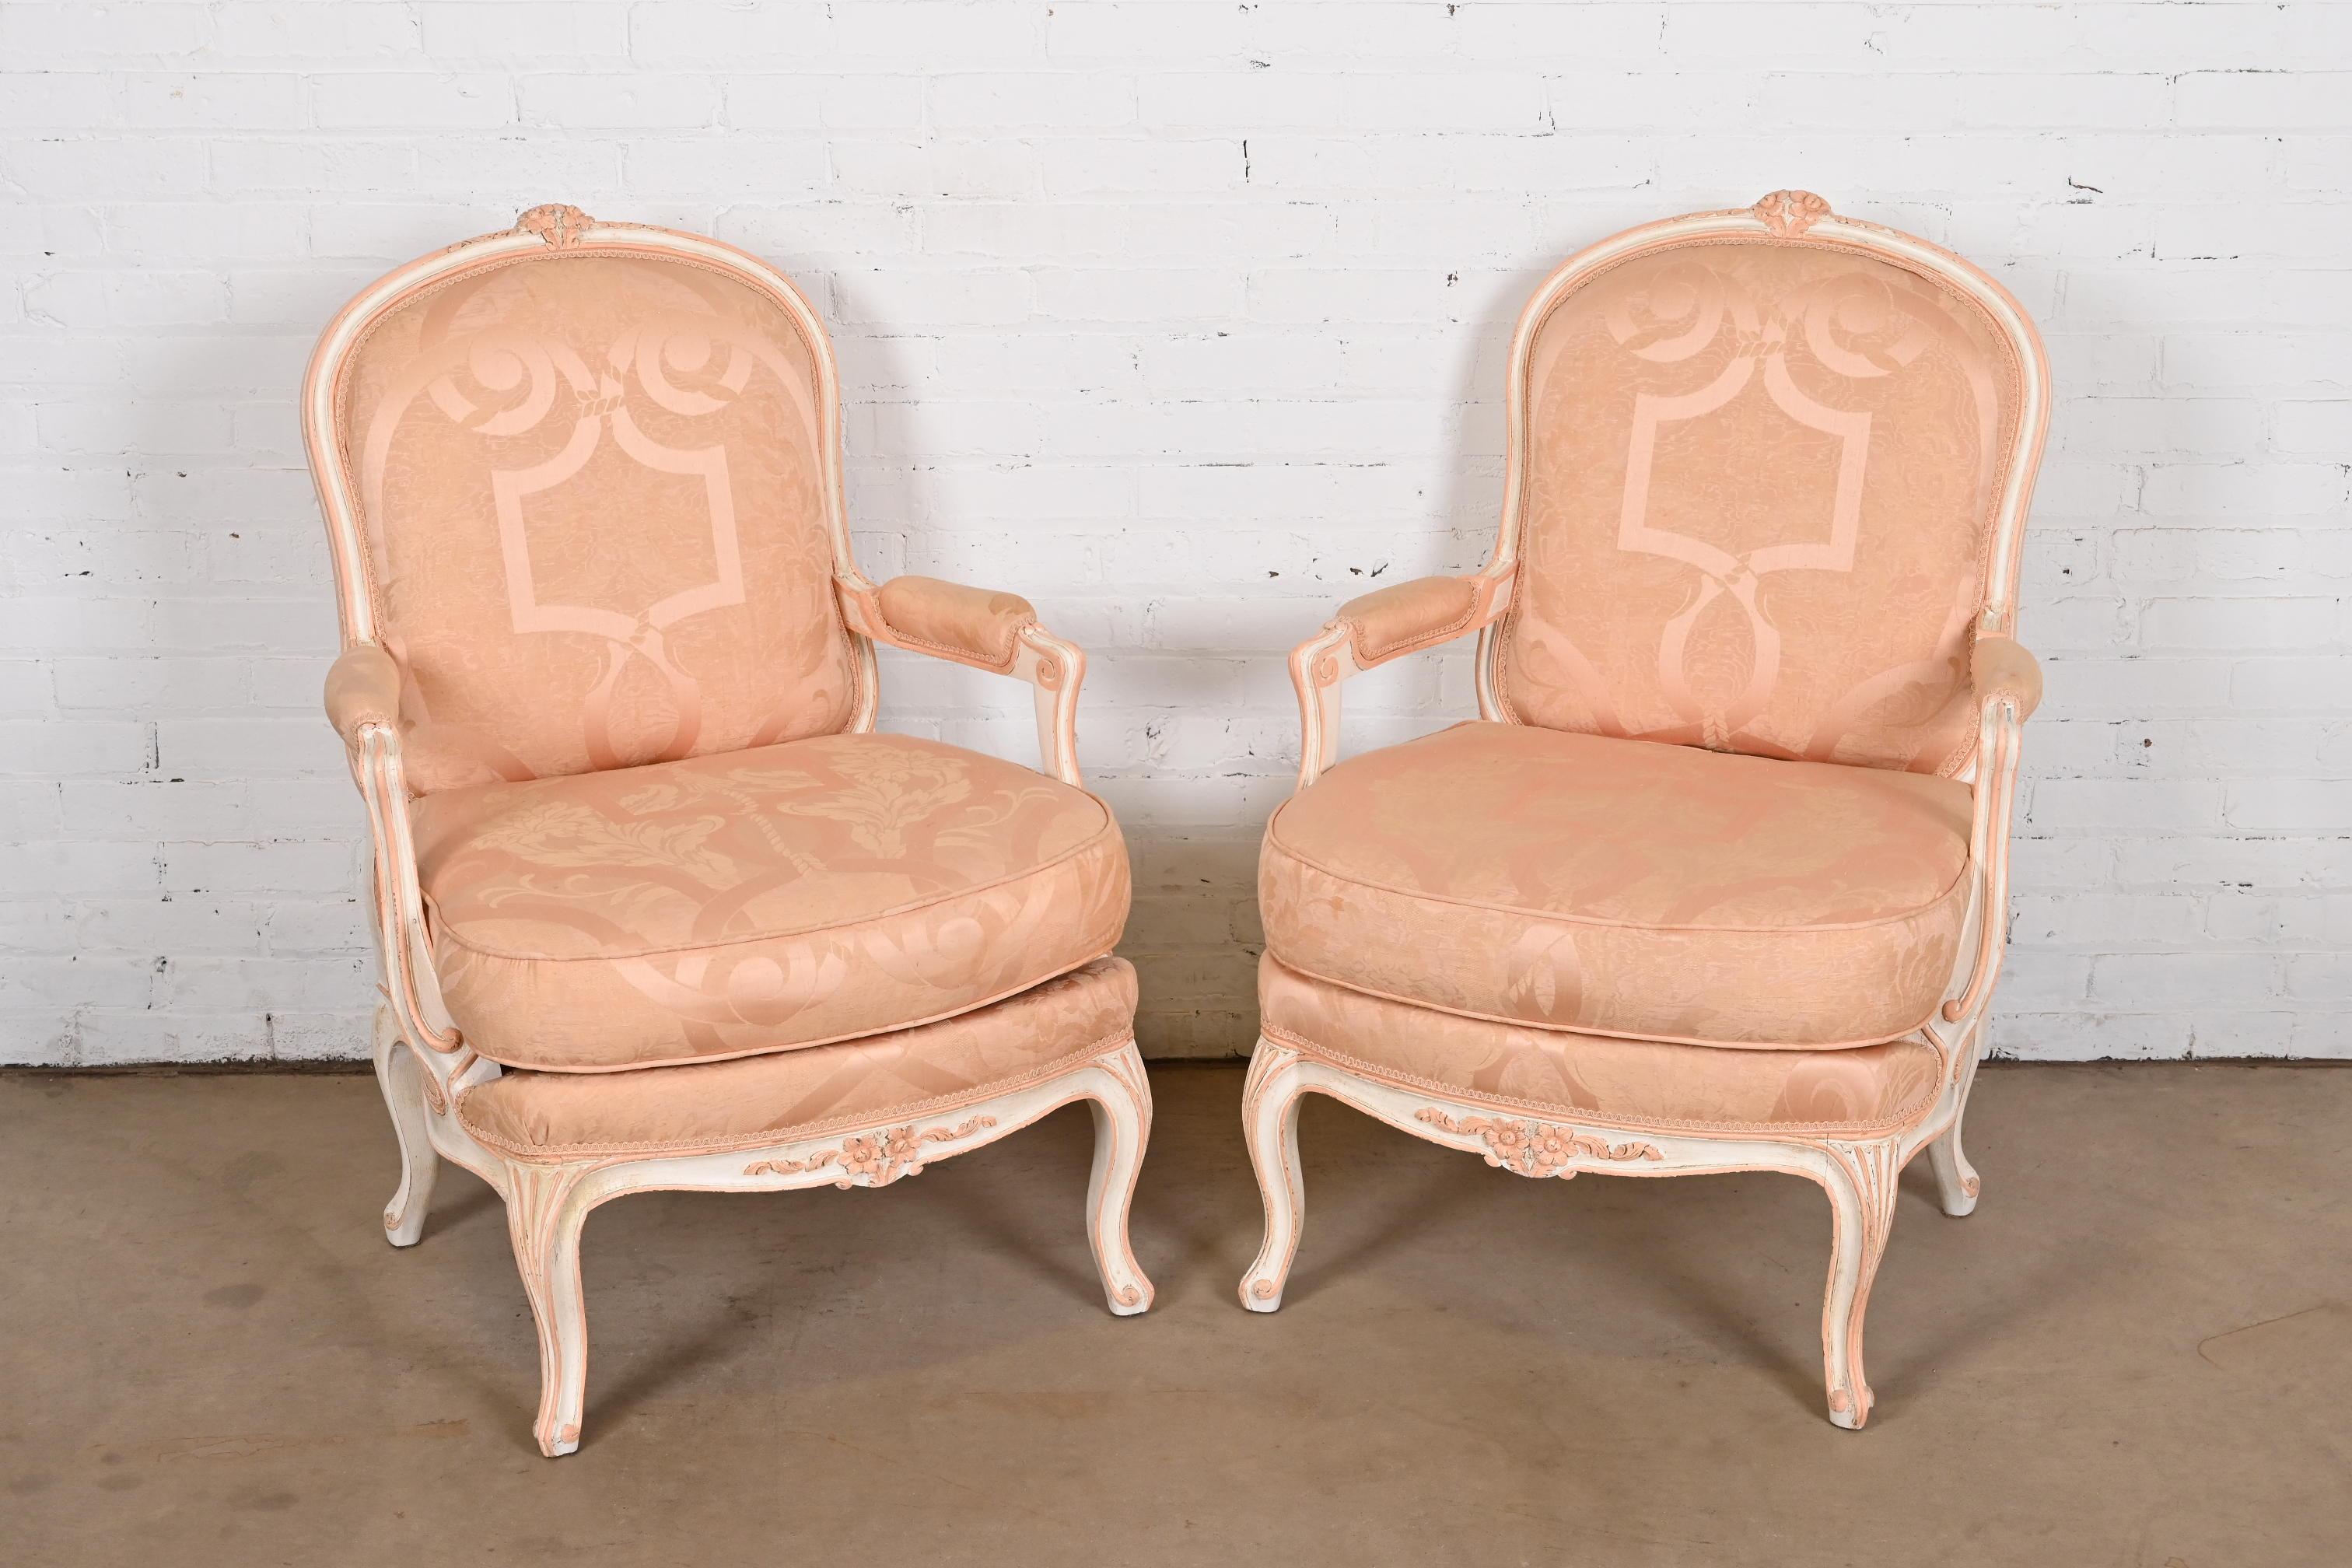 Ein wunderschönes Paar gepolsterter Lounge-Sessel im Louis XV-Stil oder Bergere-Sessel aus der französischen Provinz

Nach dem Vorbild von Baker Furniture

USA, ca. 1940er Jahre

Rahmen aus geschnitztem Nussbaumholz, cremefarben und hellrosa